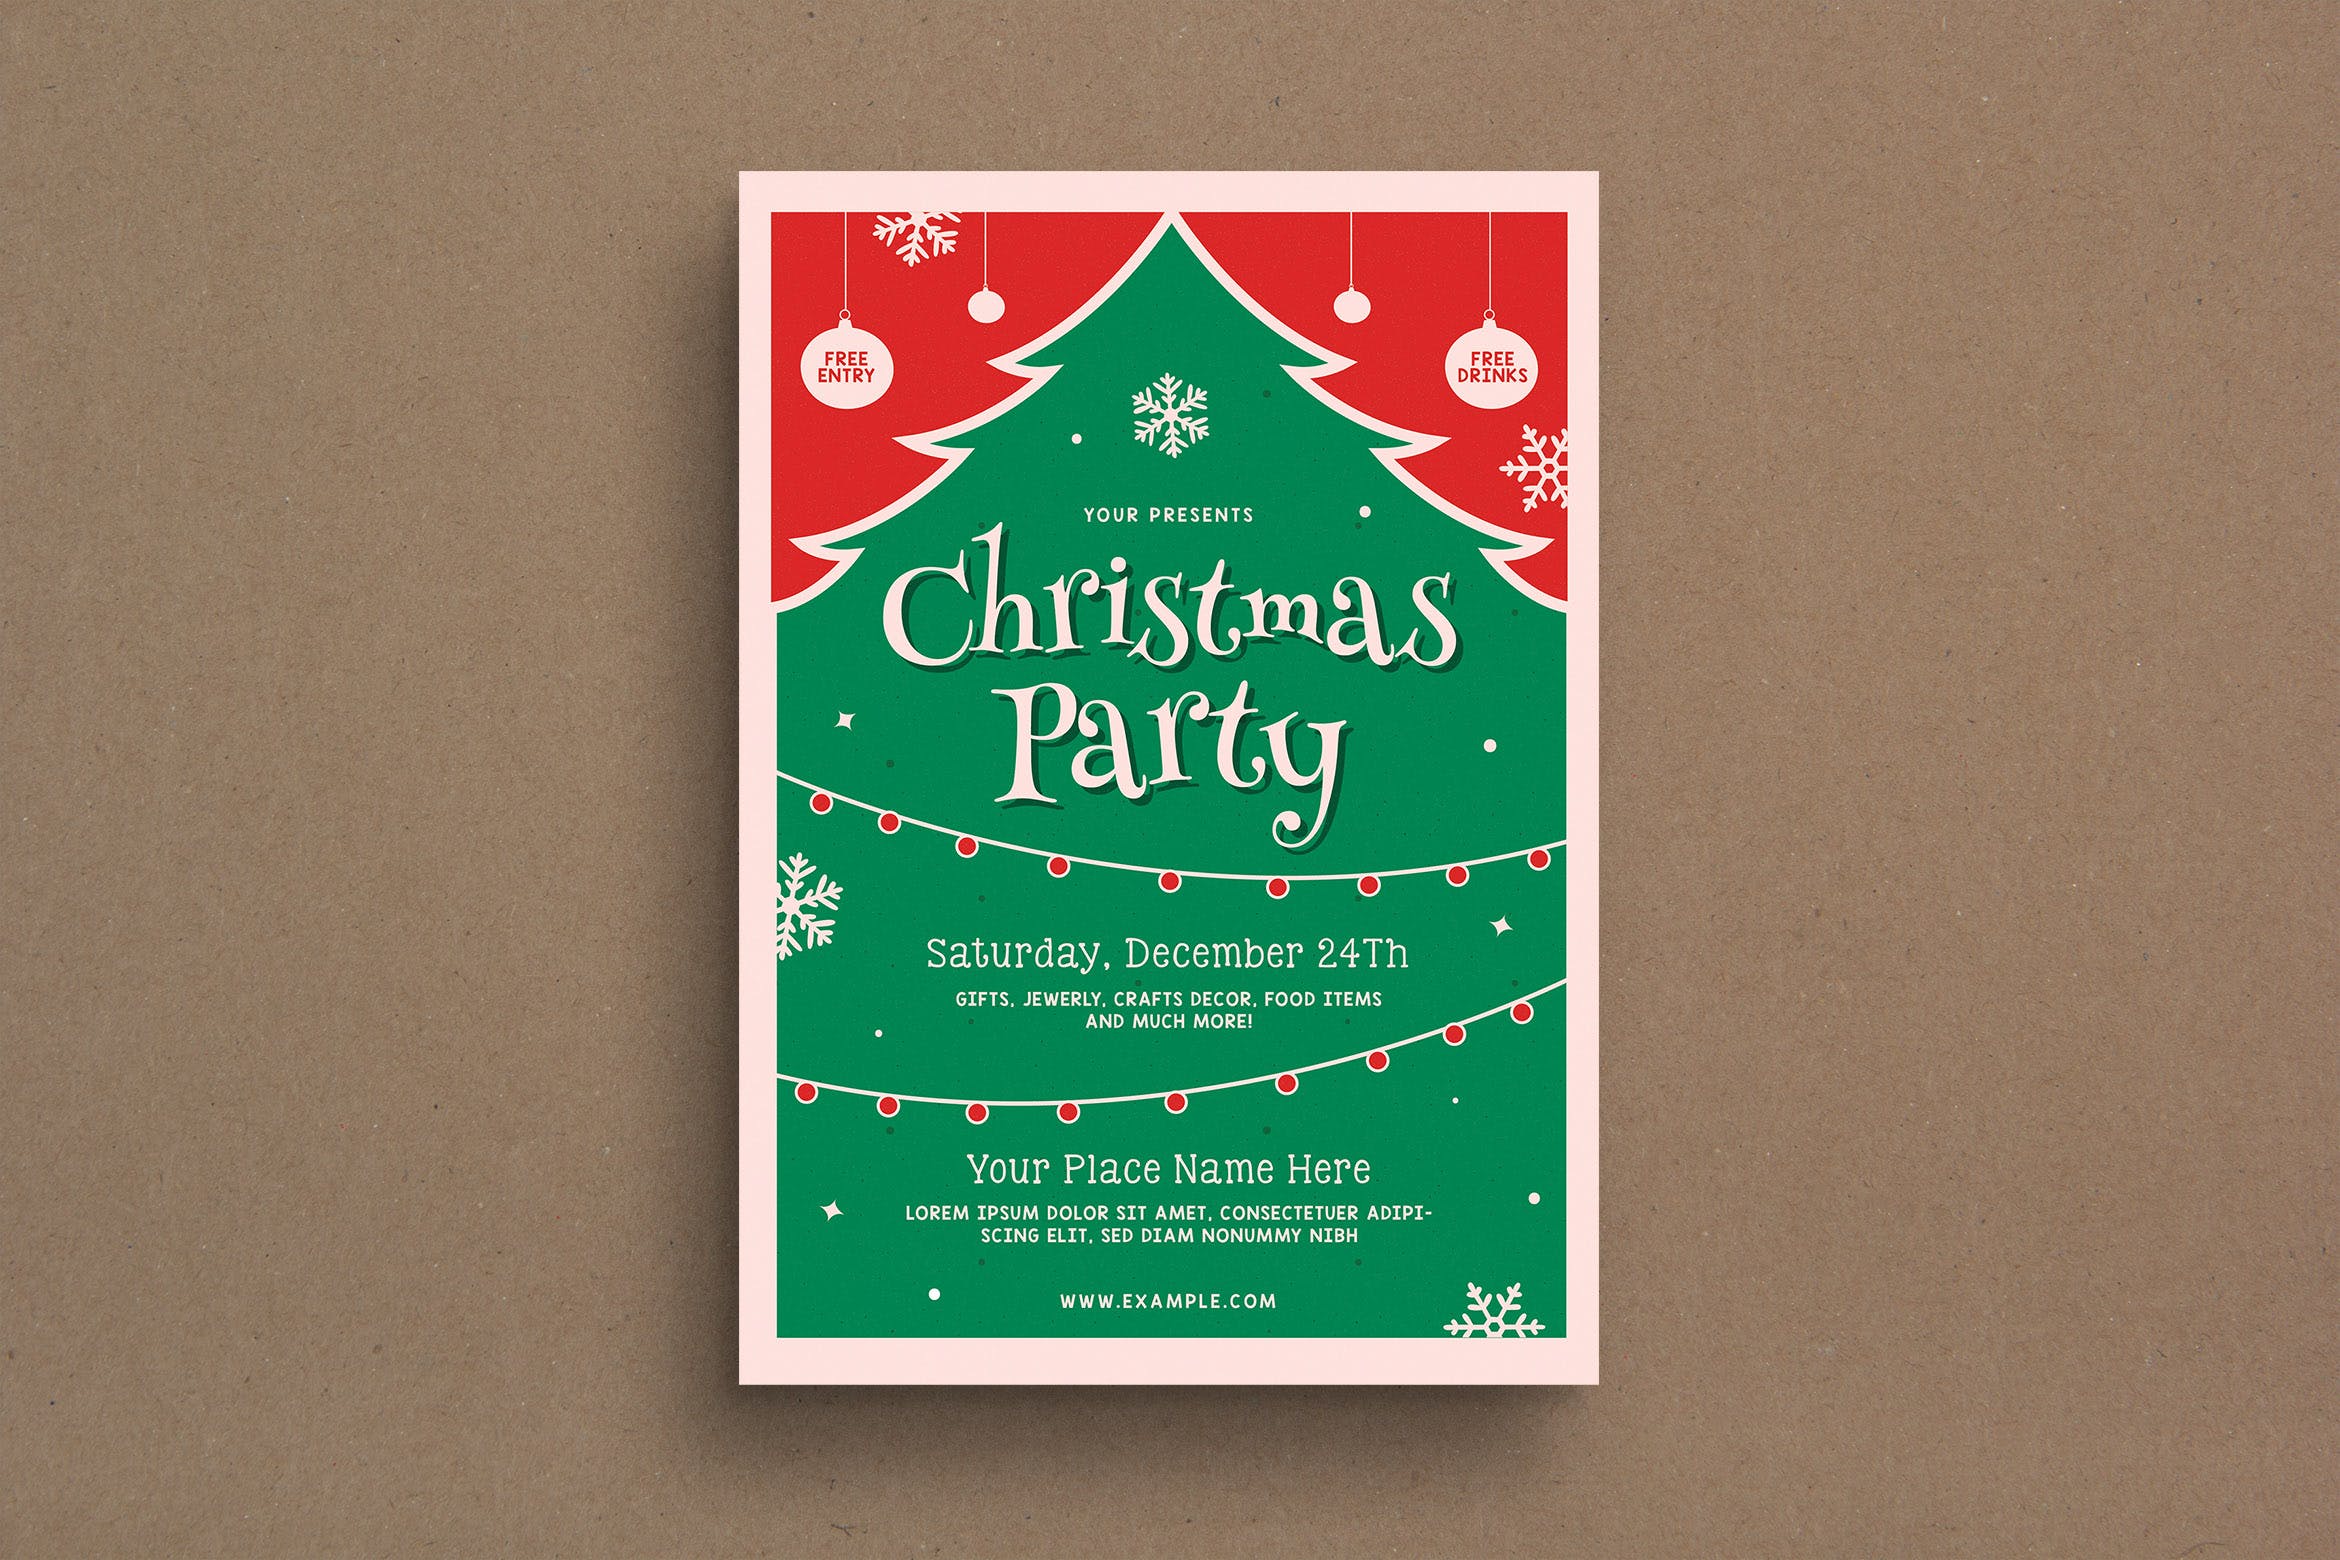 复古设计风格圣诞节活动海报传单模板v2 Retro Christmas Event Flyer插图